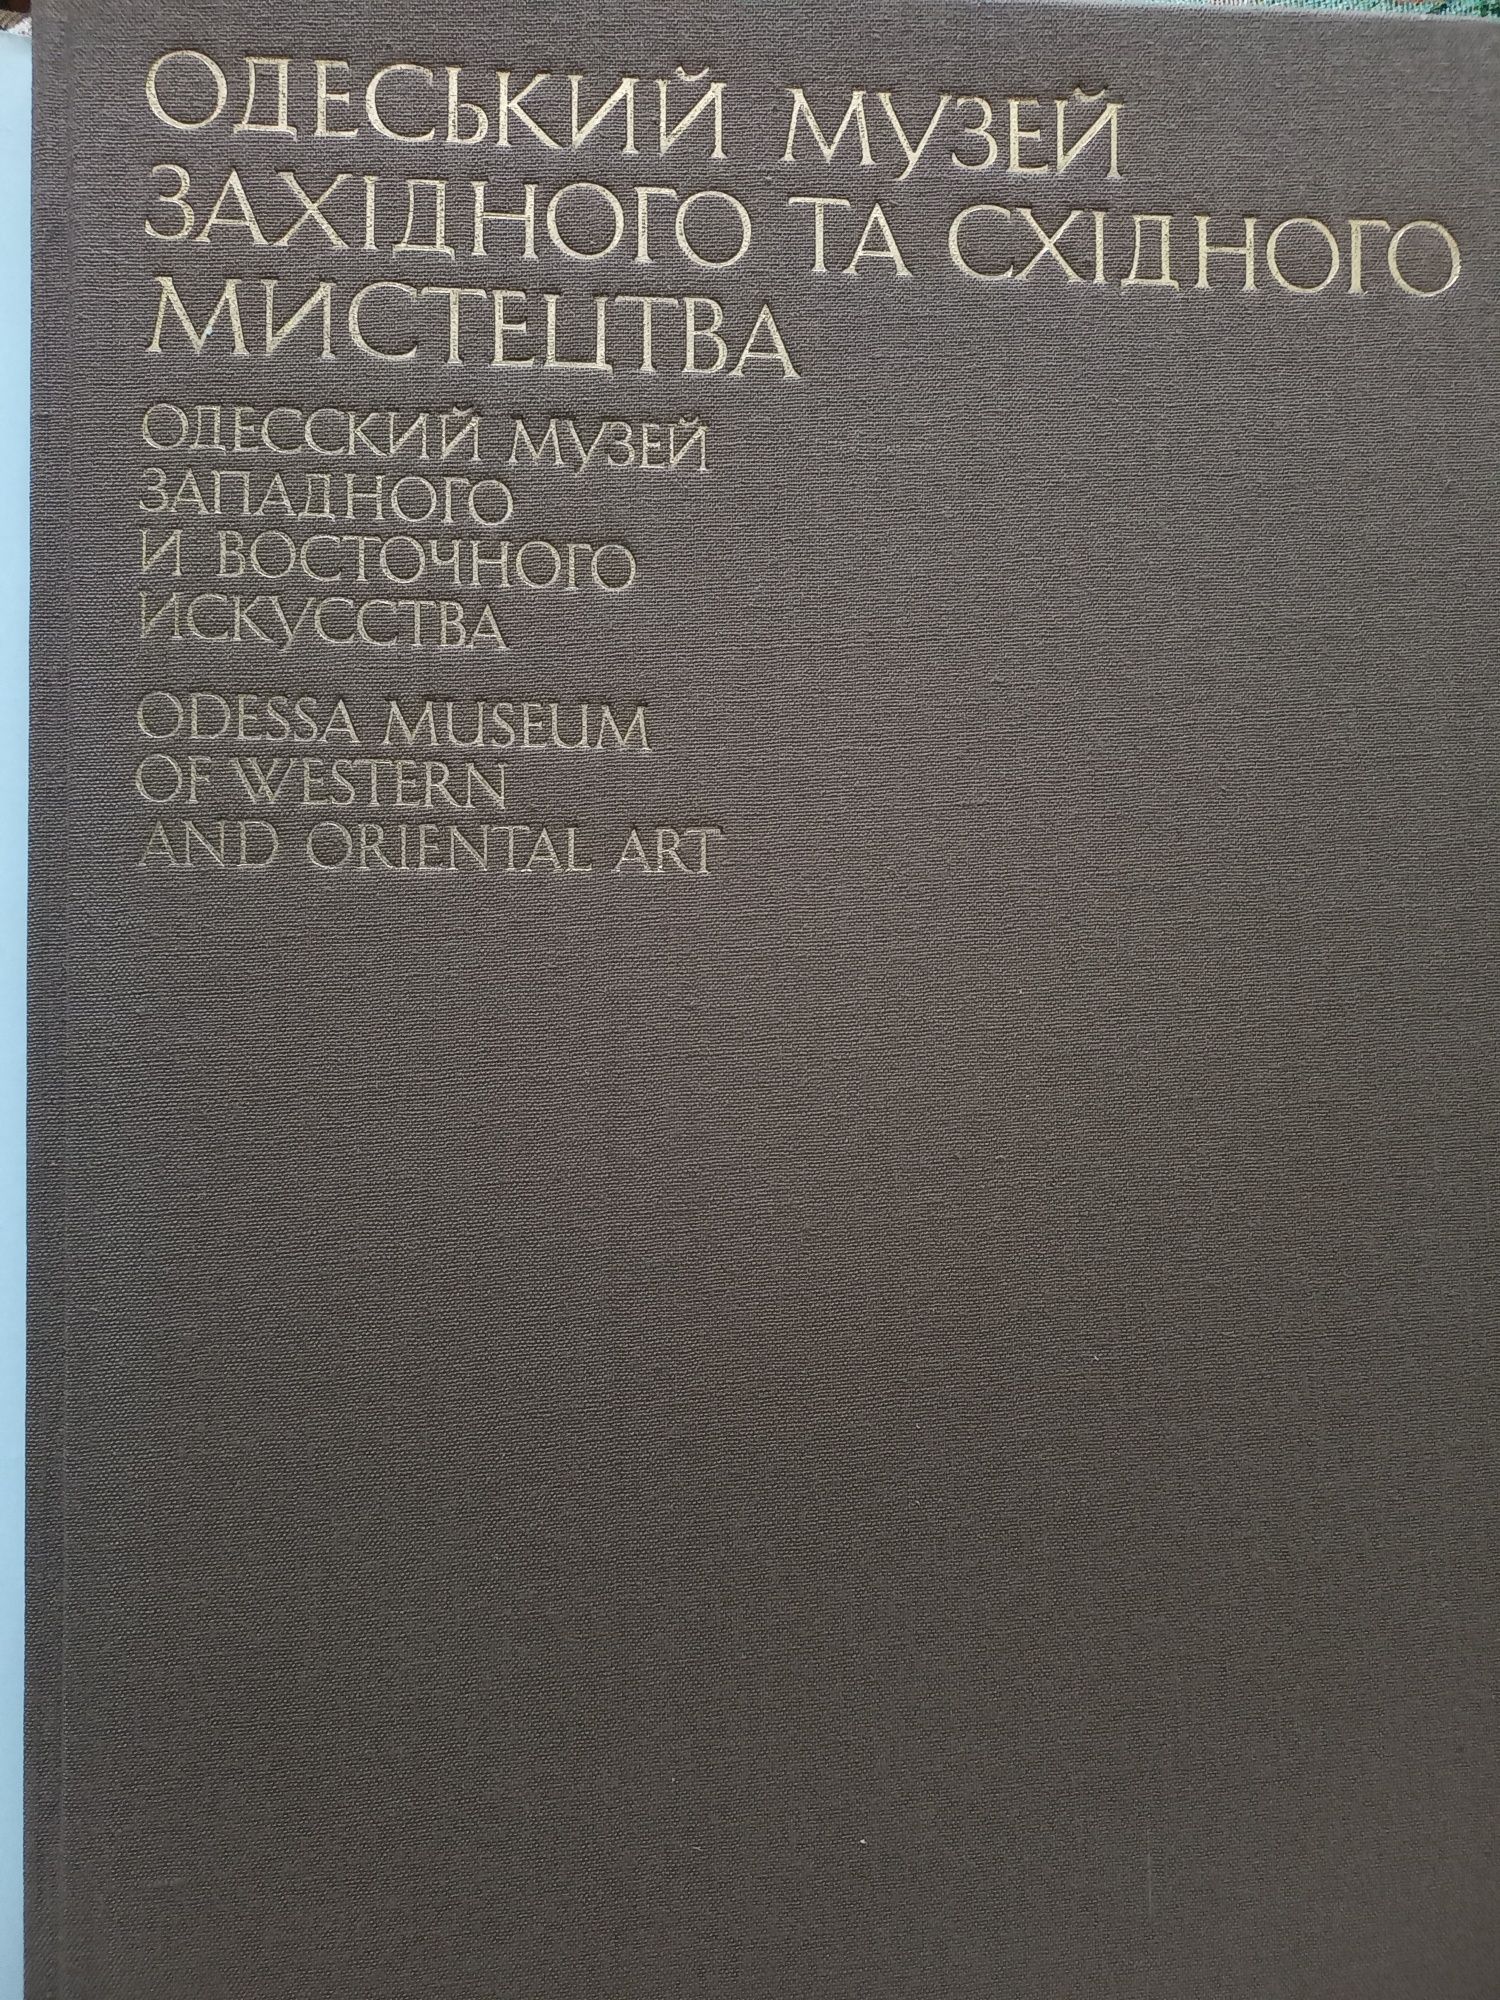 Книга "Одеський музей західного та східного мистецтва"